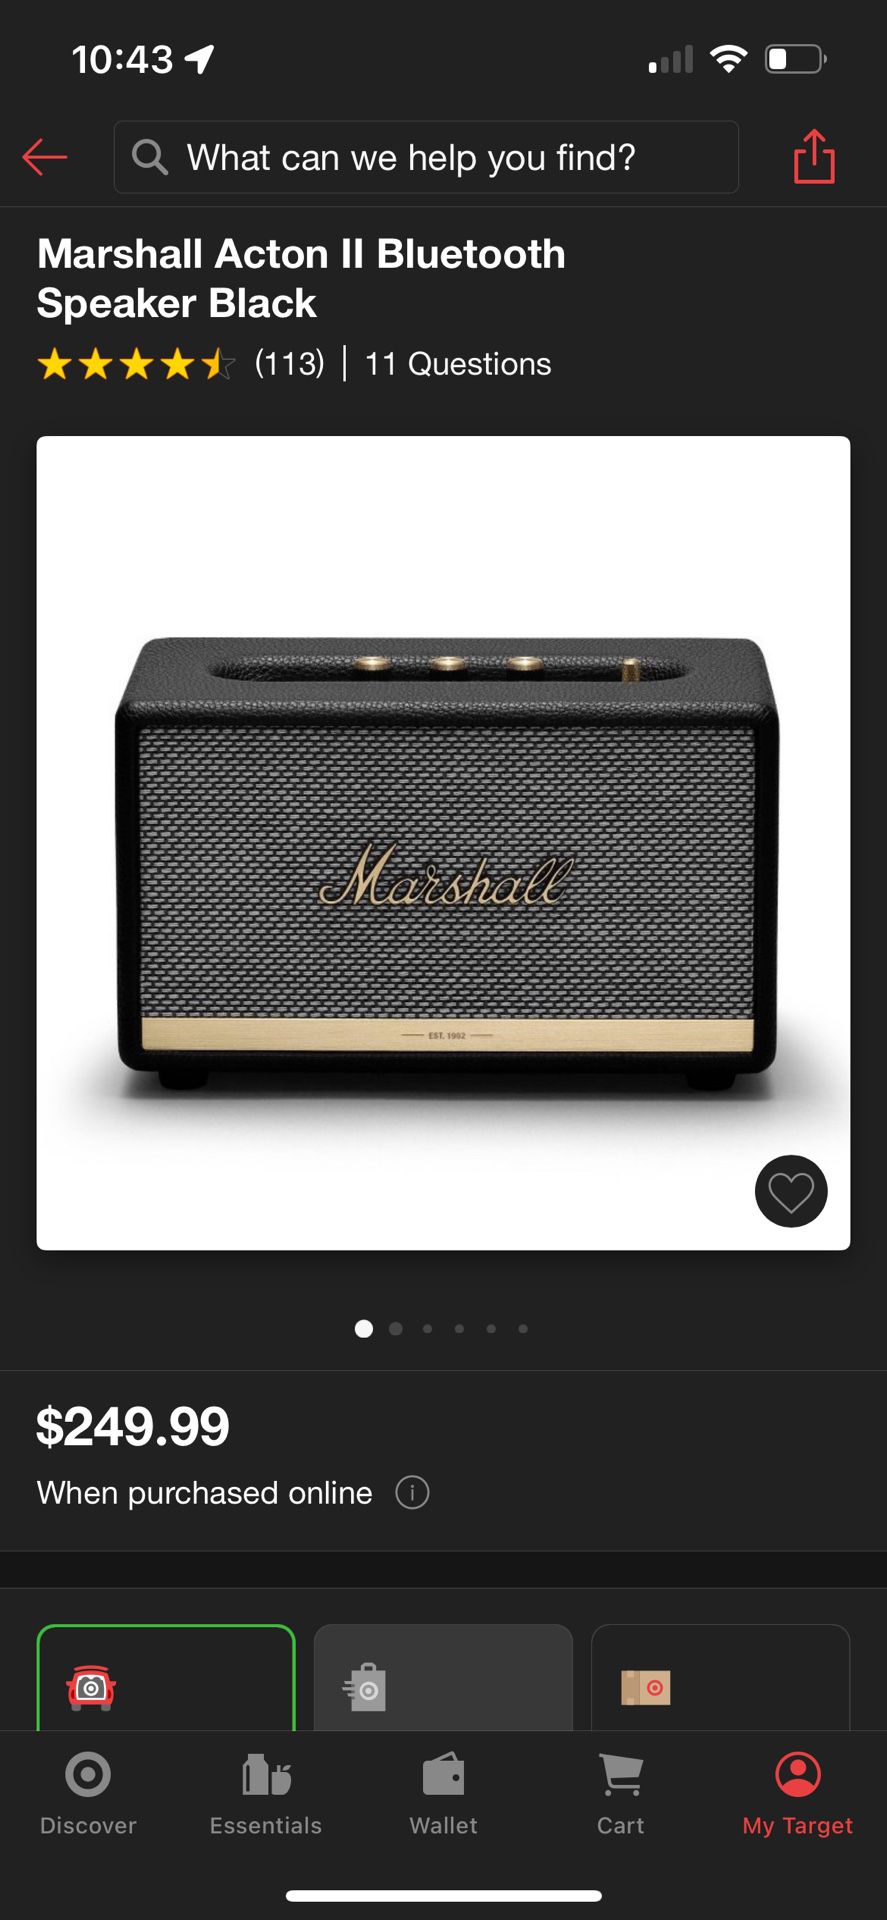 Marshall Acton Il Bluetooth Speaker Black